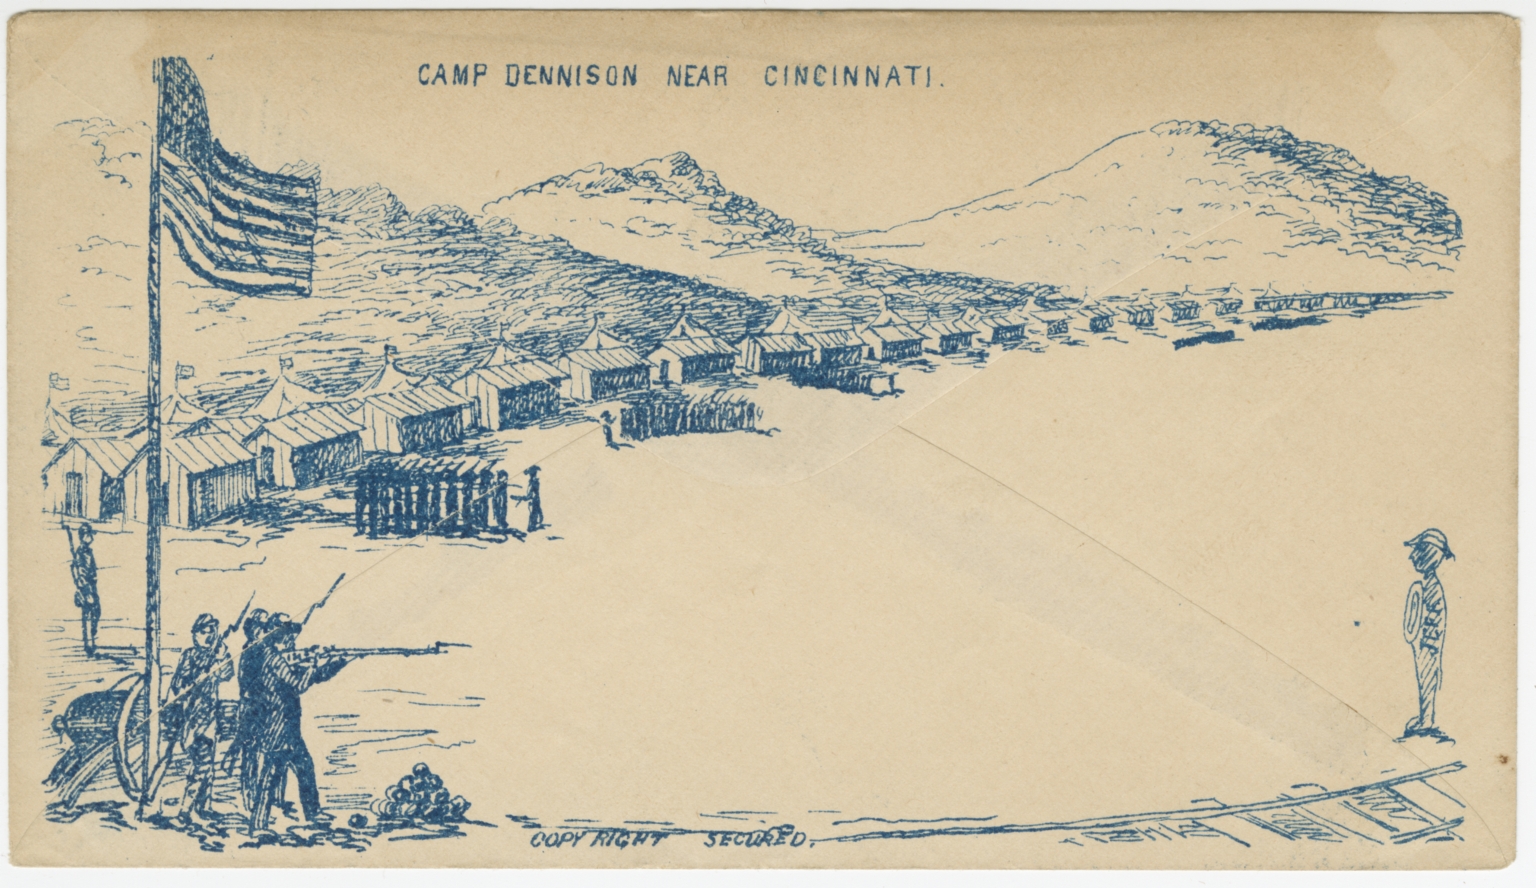 Camp Dennison near Cincinnati